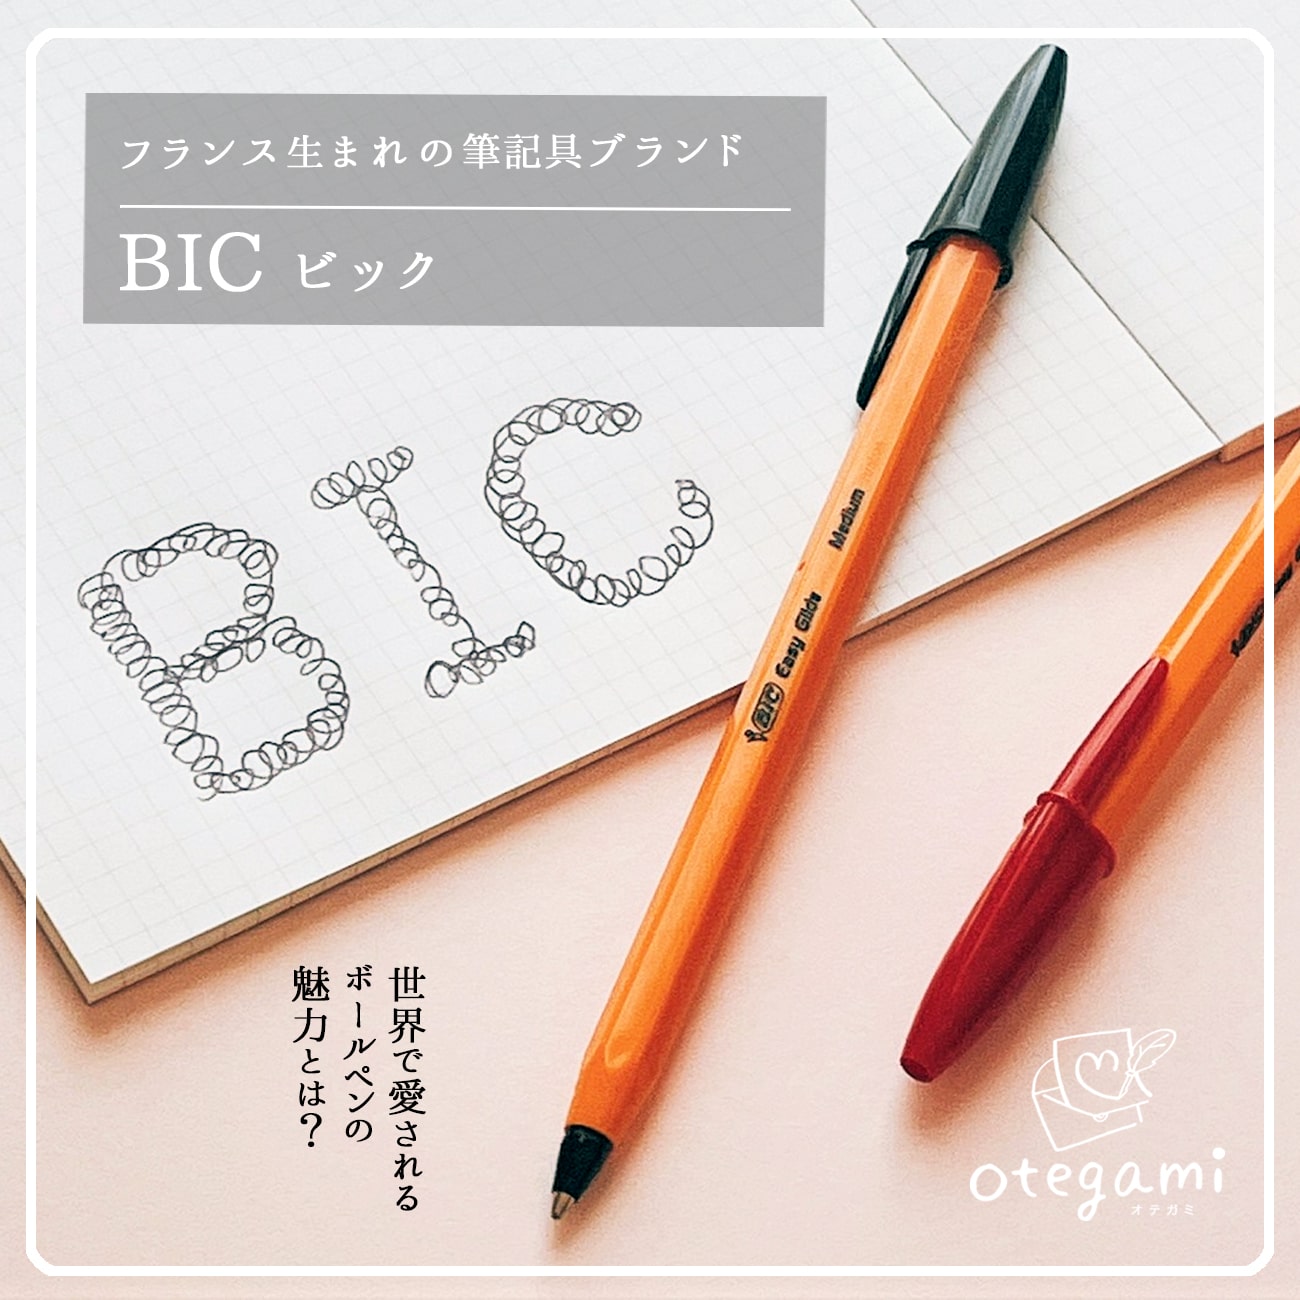 世界で愛される Bic ボールペンの魅力とは Sponsored Otegami オテガミ